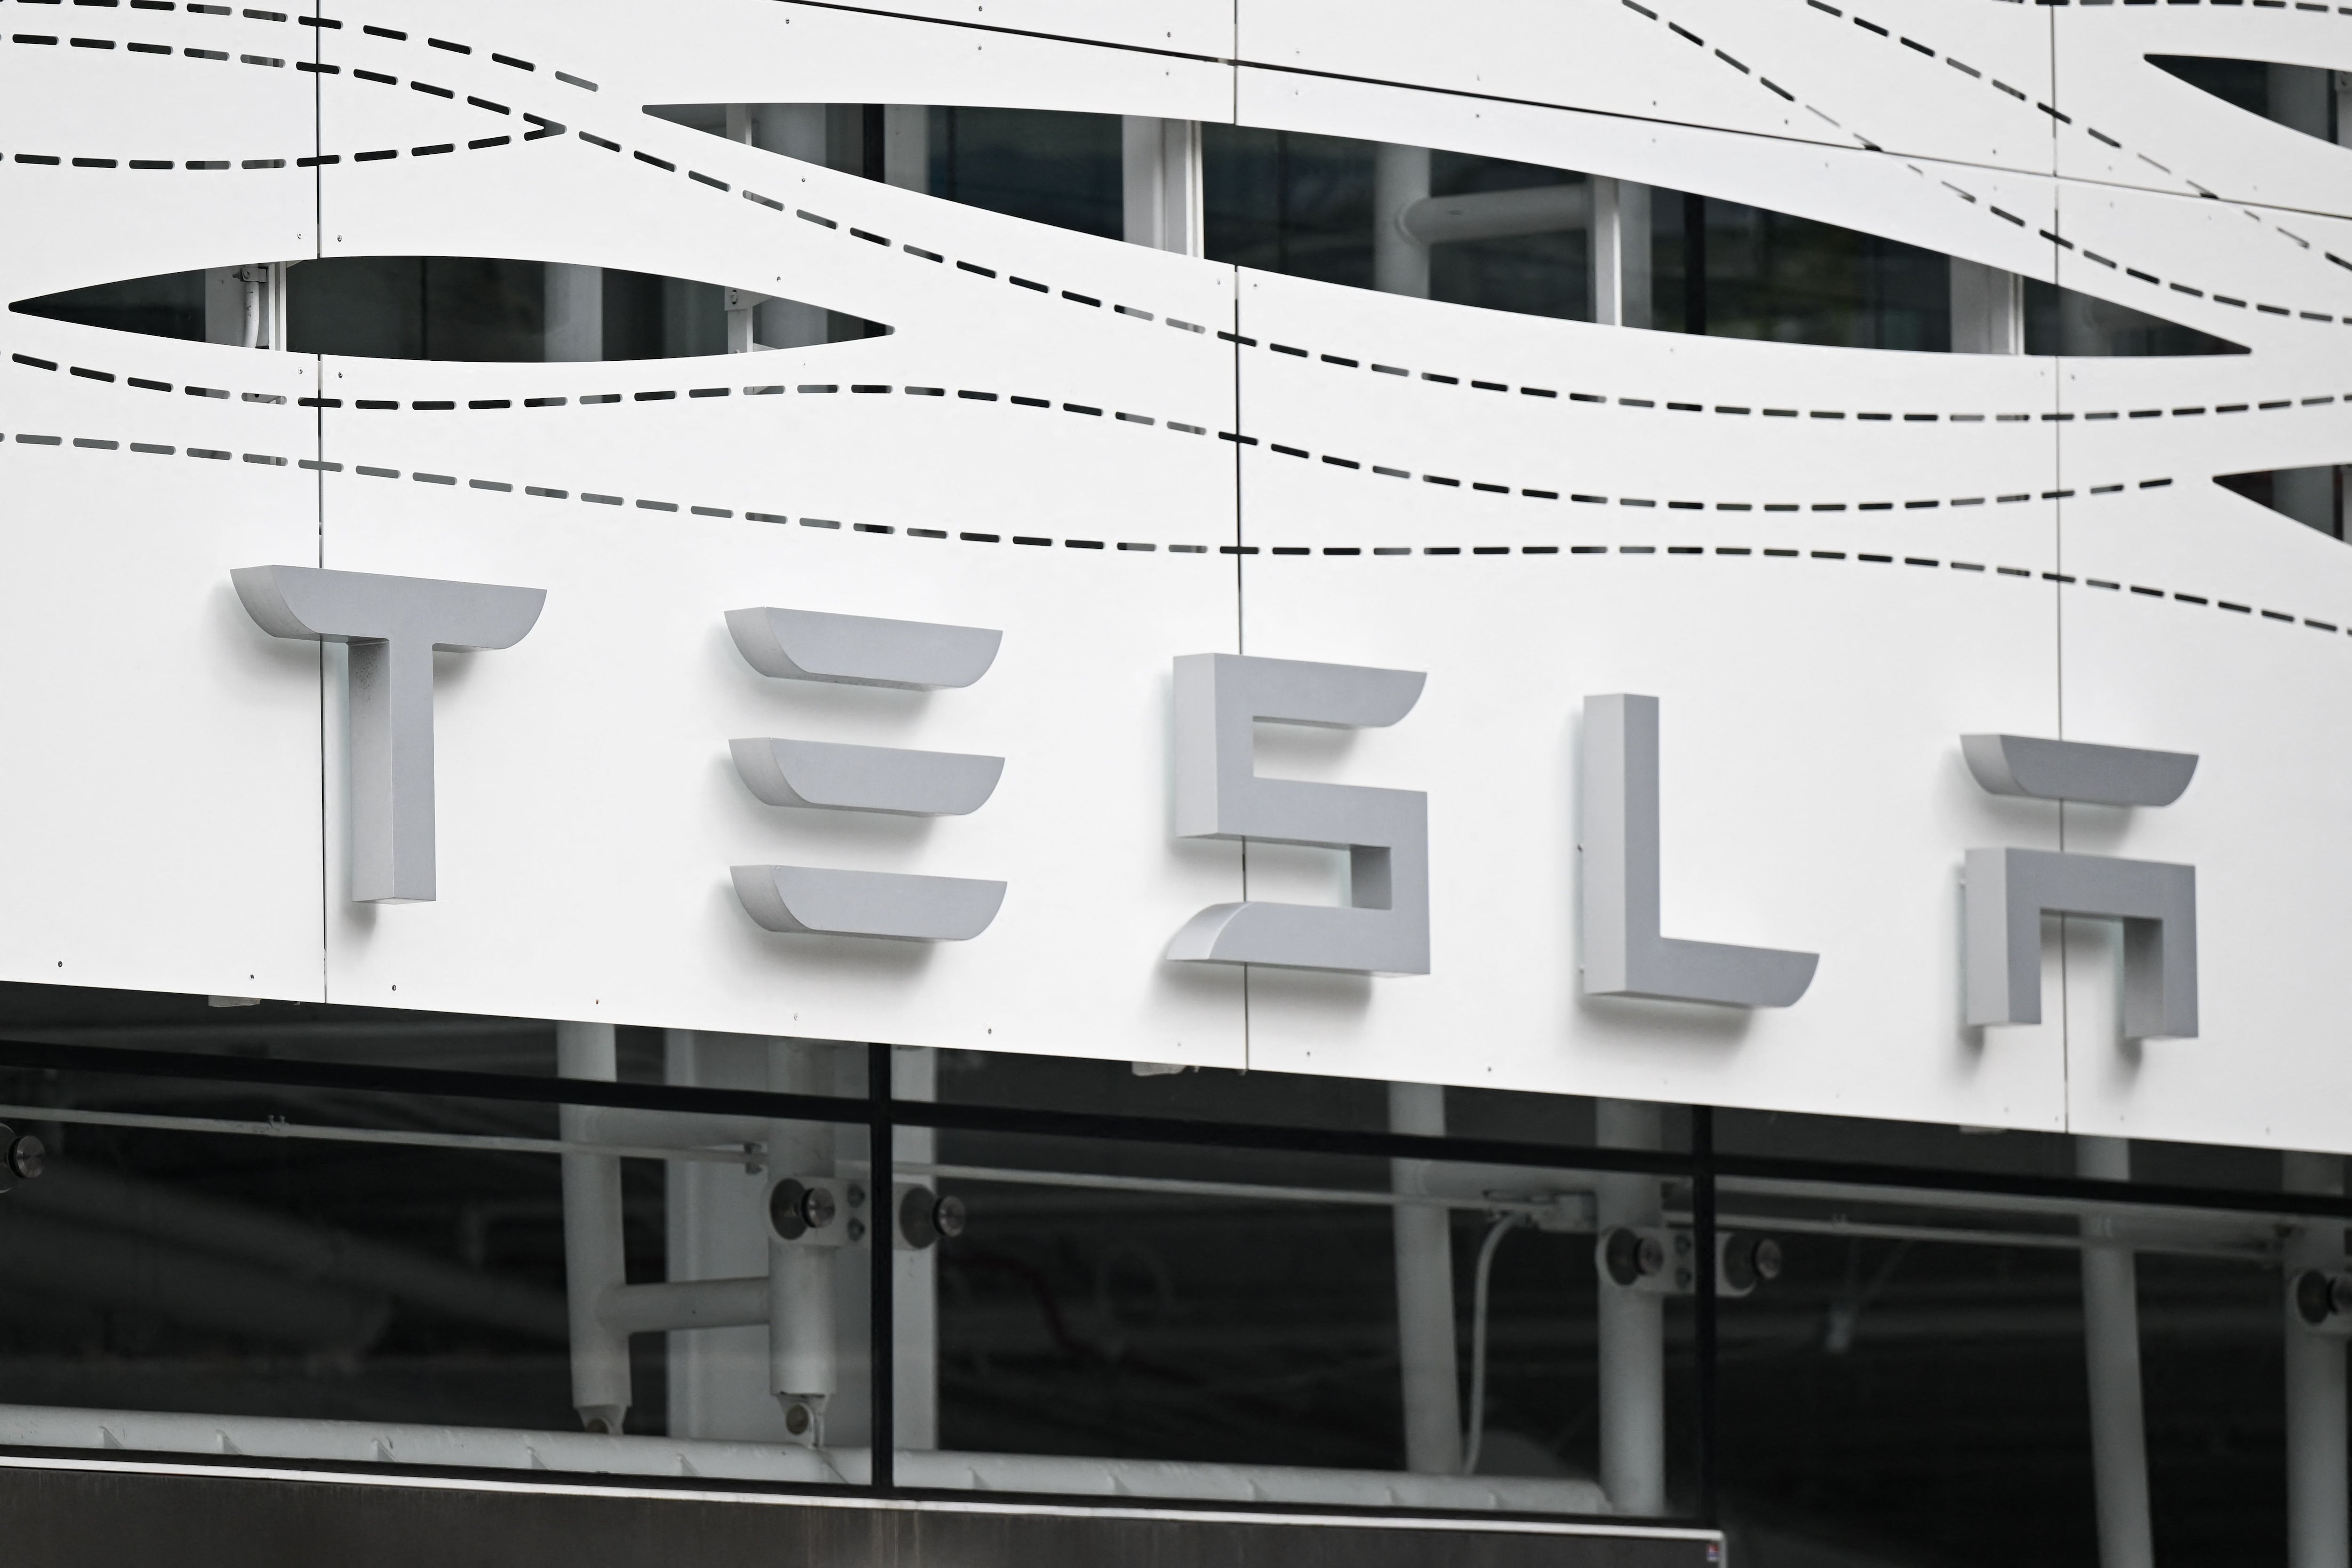 La compañía Tesla enfrenta importantes desafíos debido a la fuerte competencia en el mercado, especialmente con la empresa china BYD.